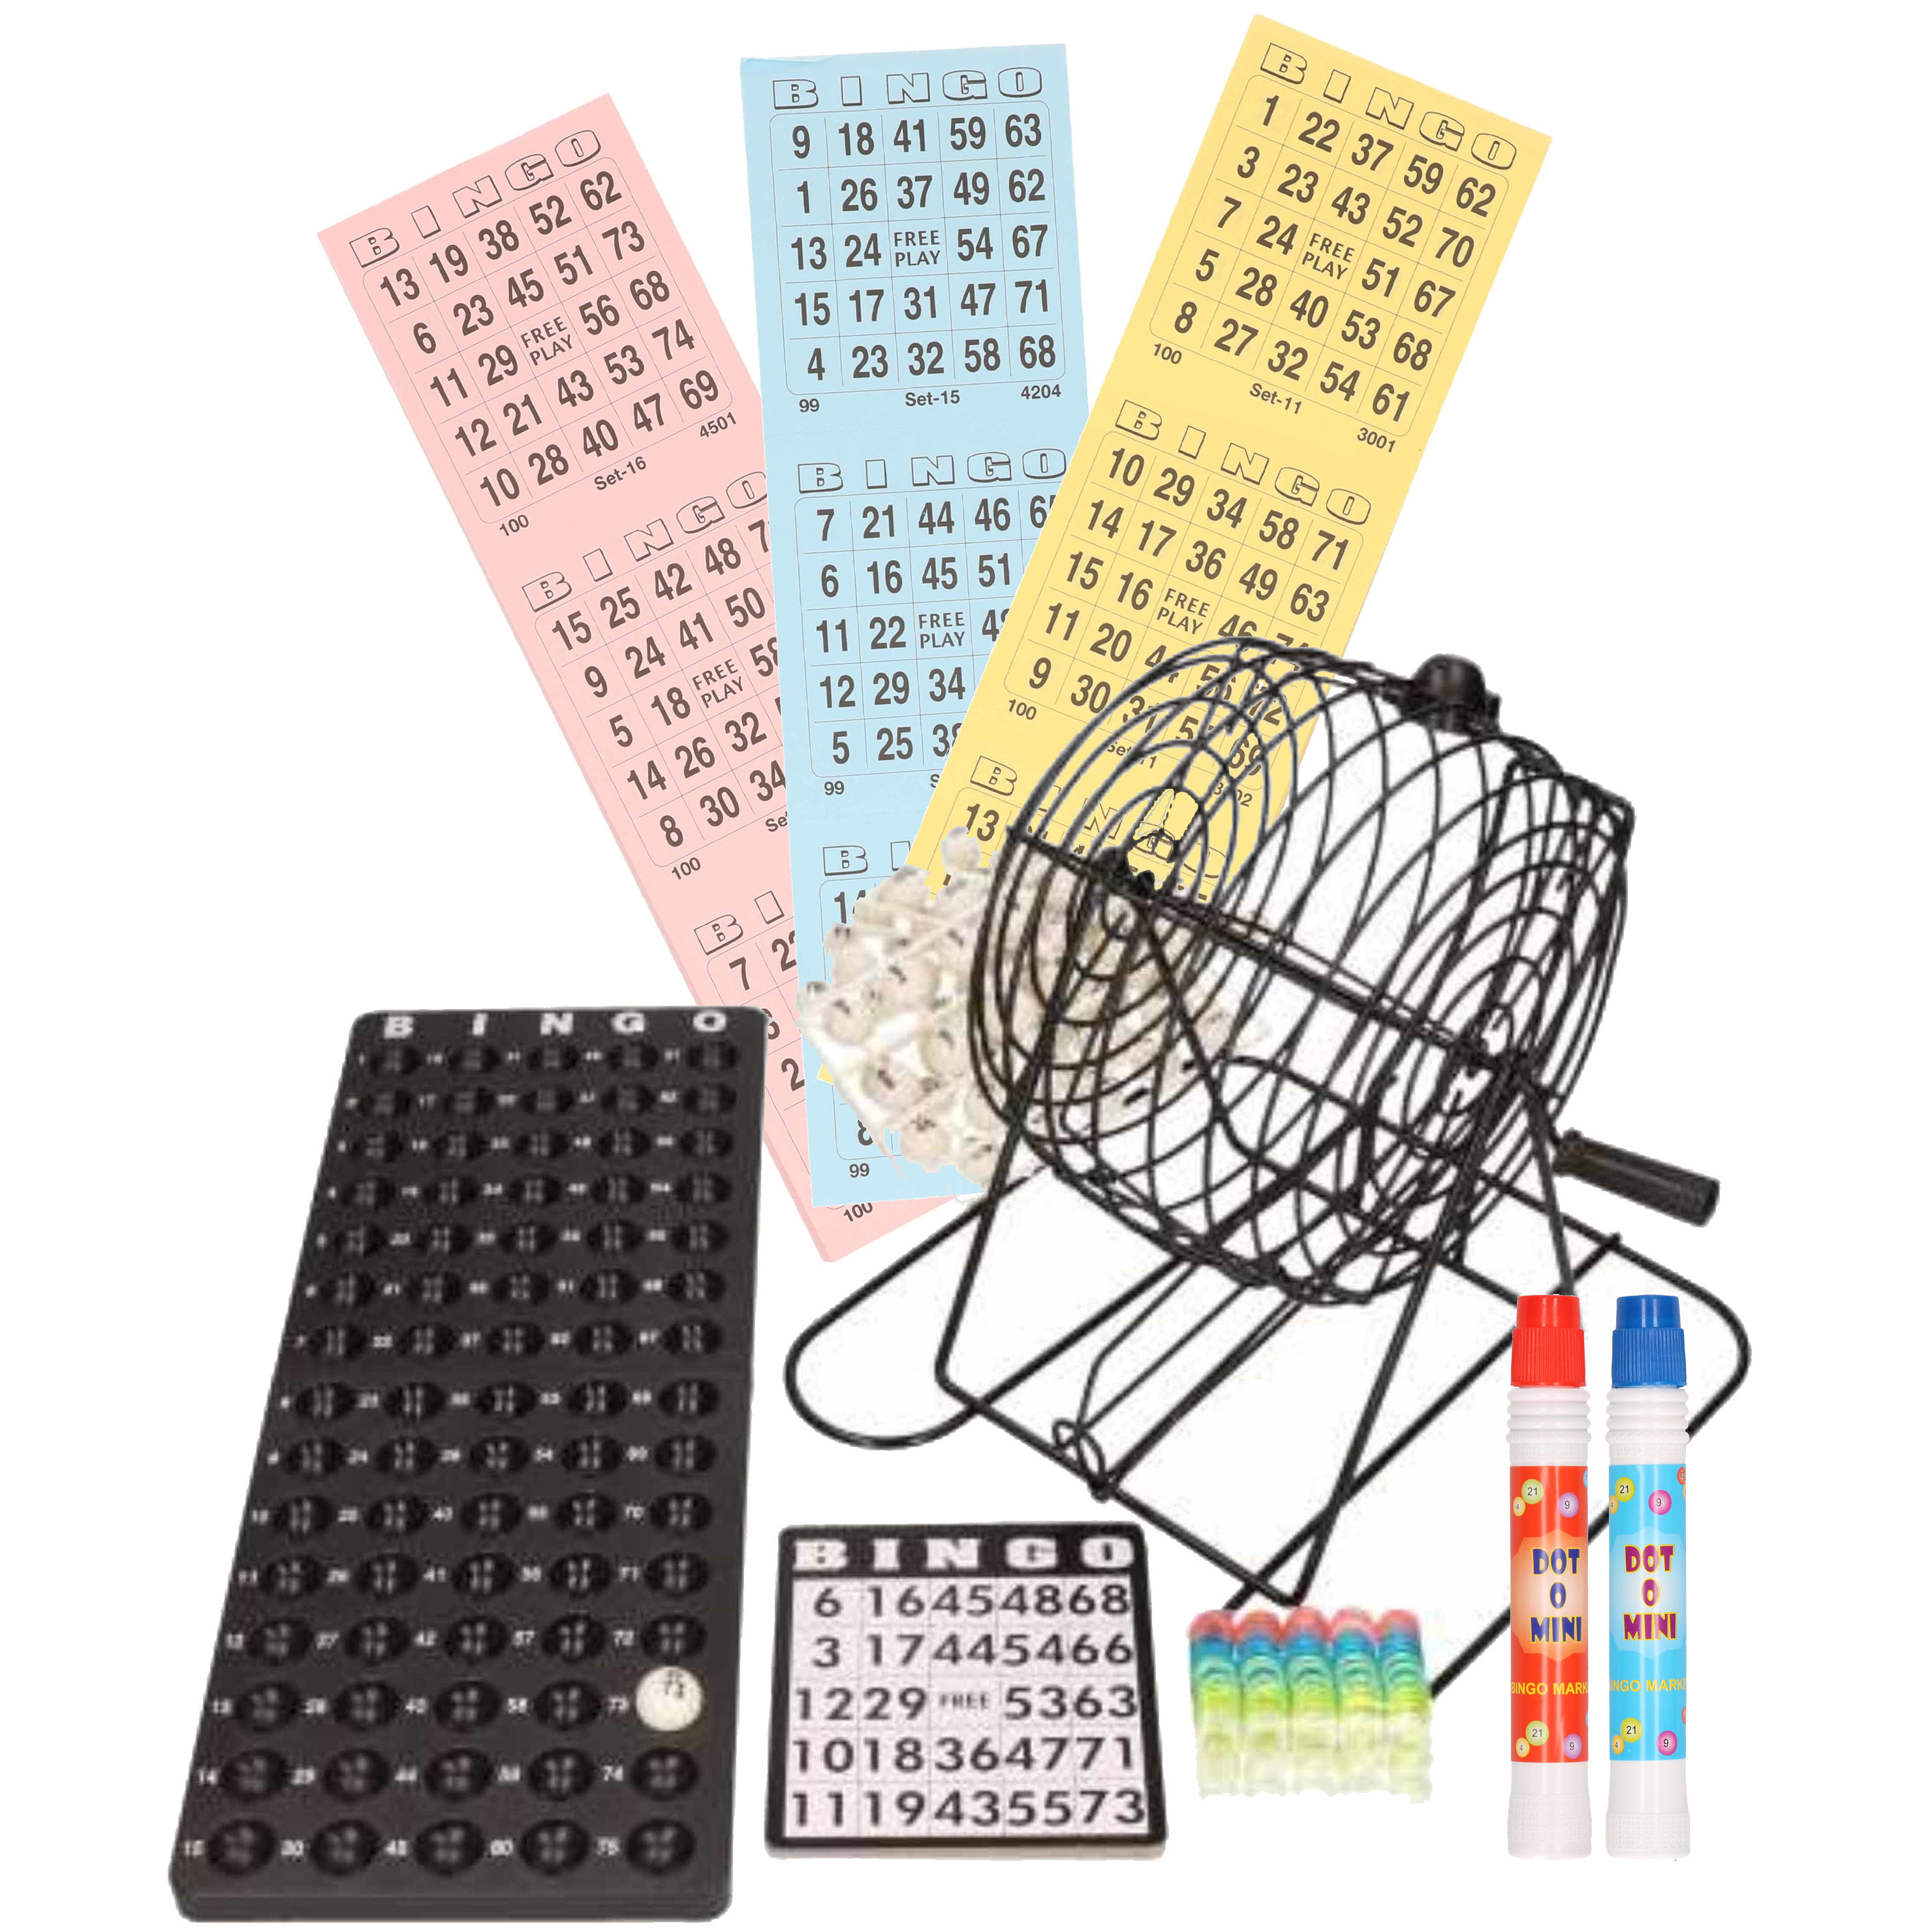 Bingo spel zwart-wit complete set 29 cm nummers 1-75 met molen-168x bingokaarten-2x stiften